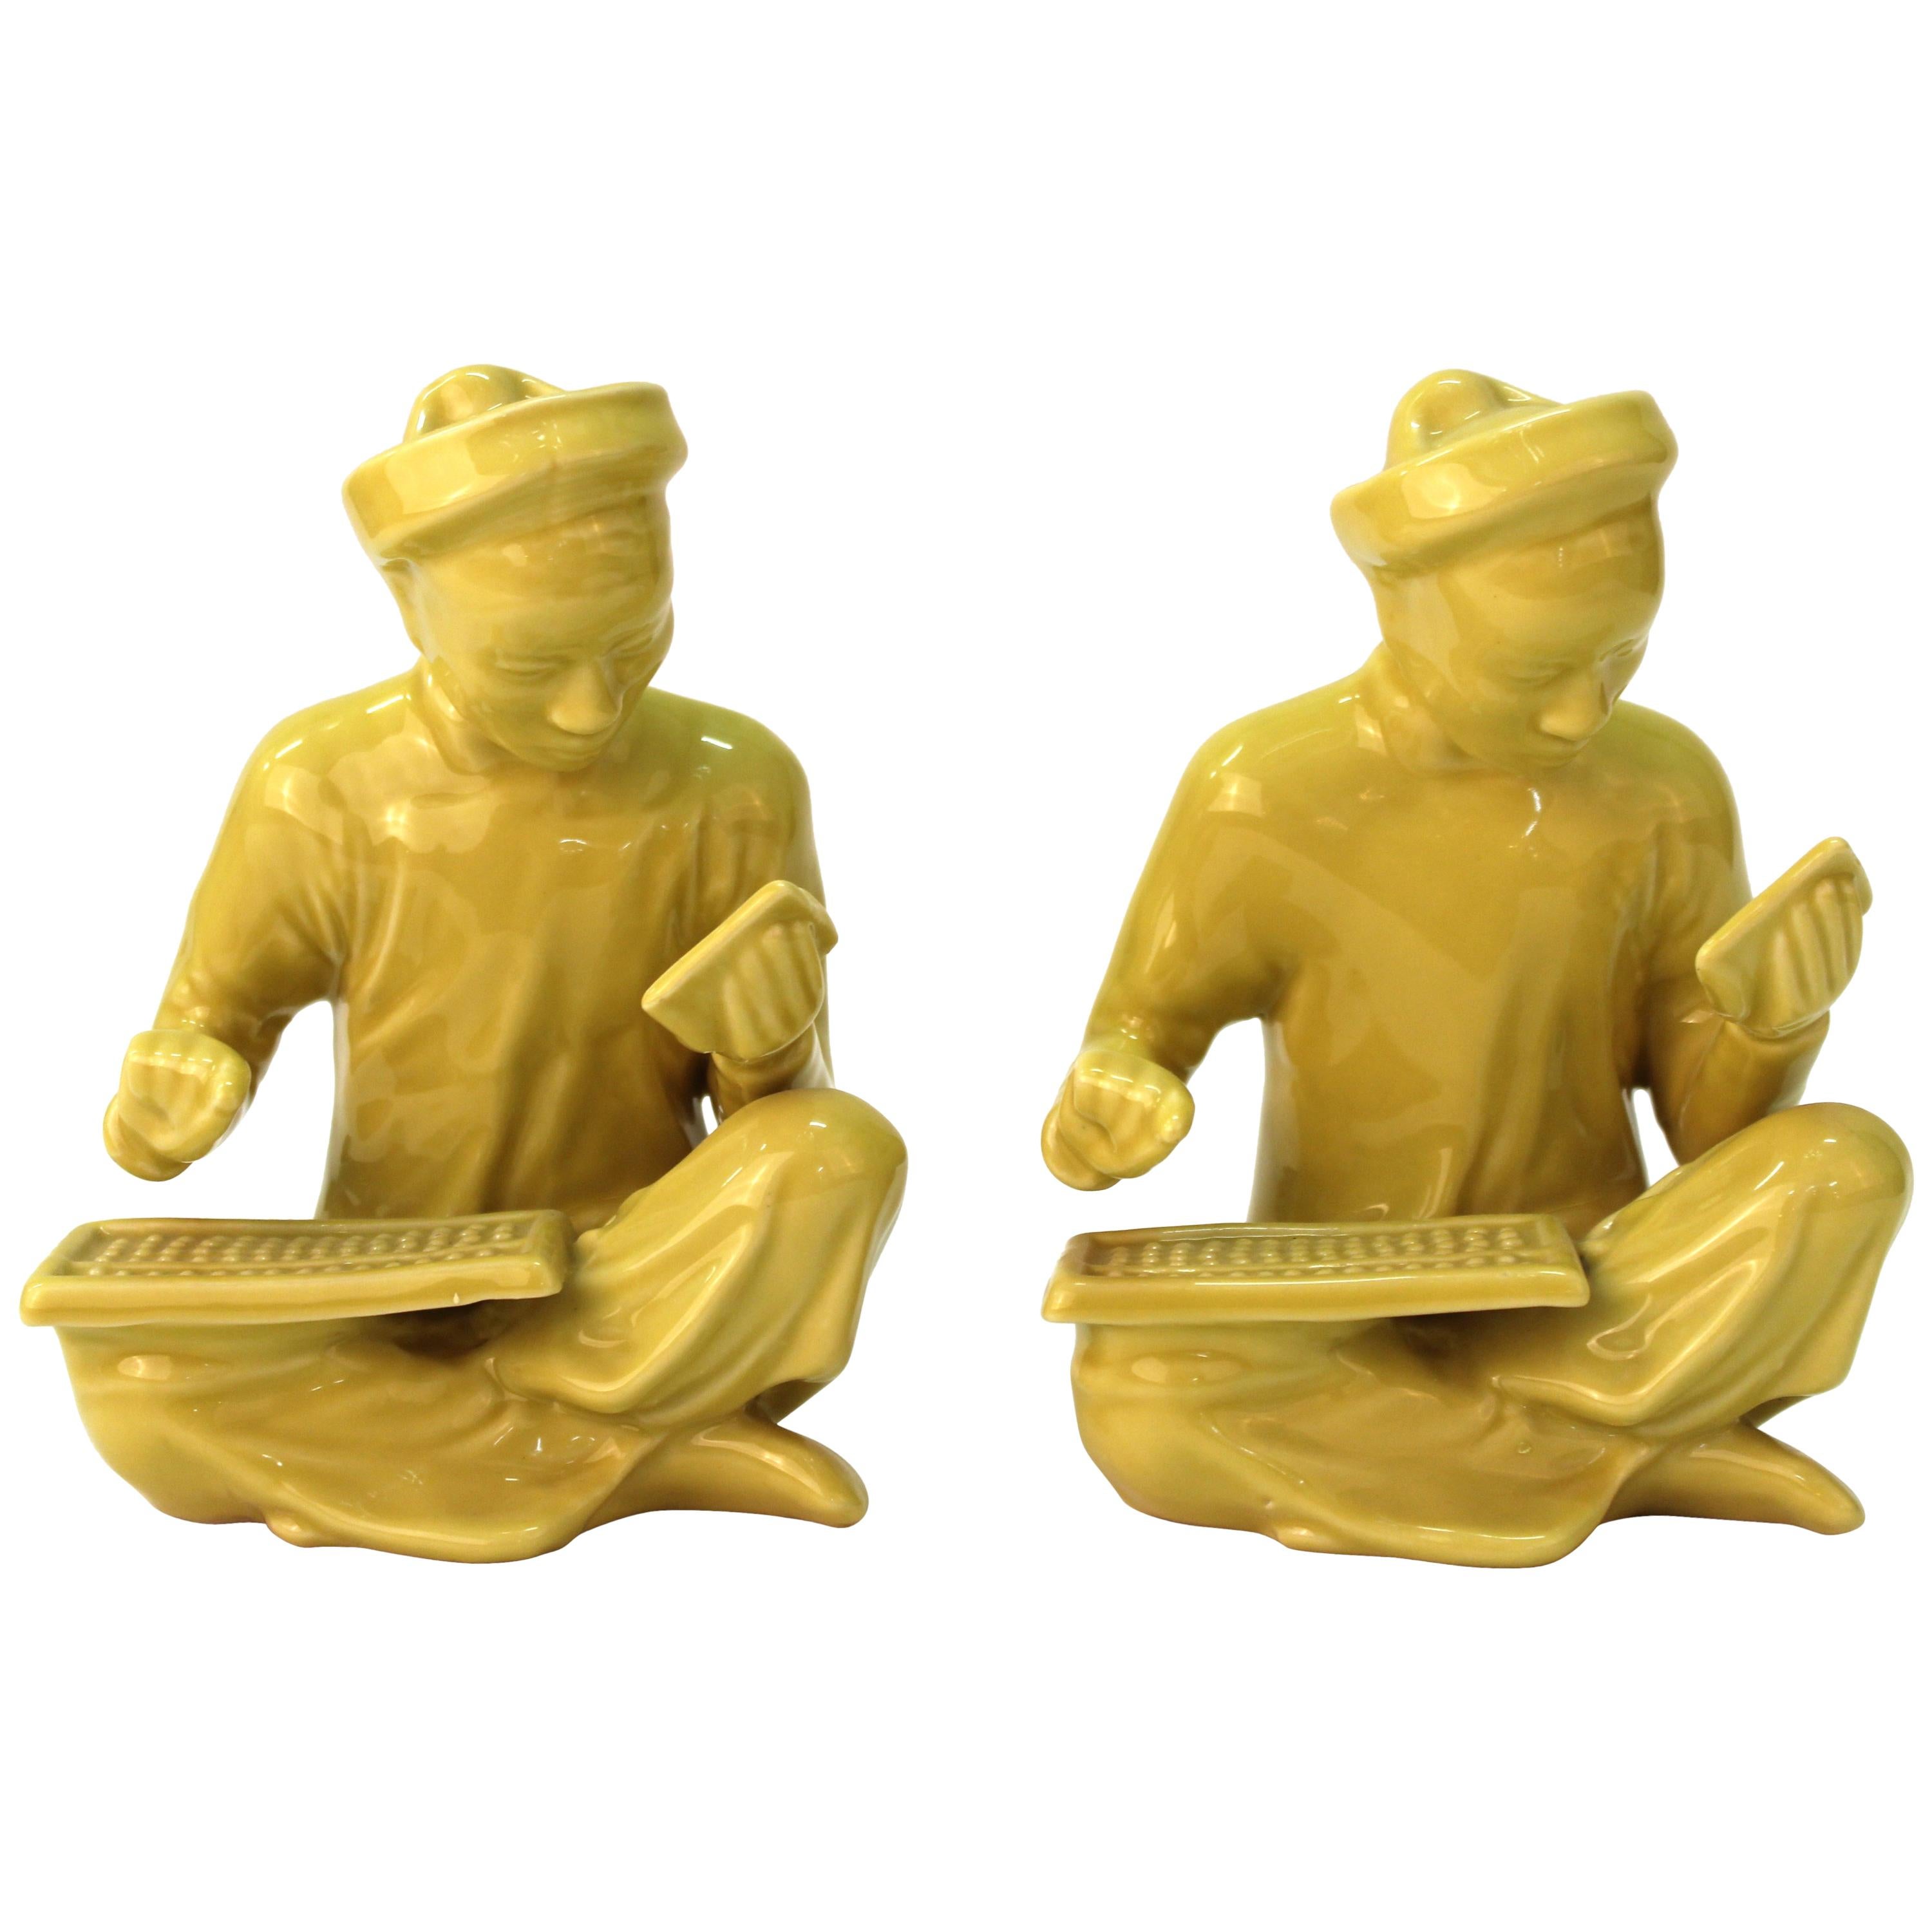 Chinese Yellow Ceramic Seated Mandarin Statues